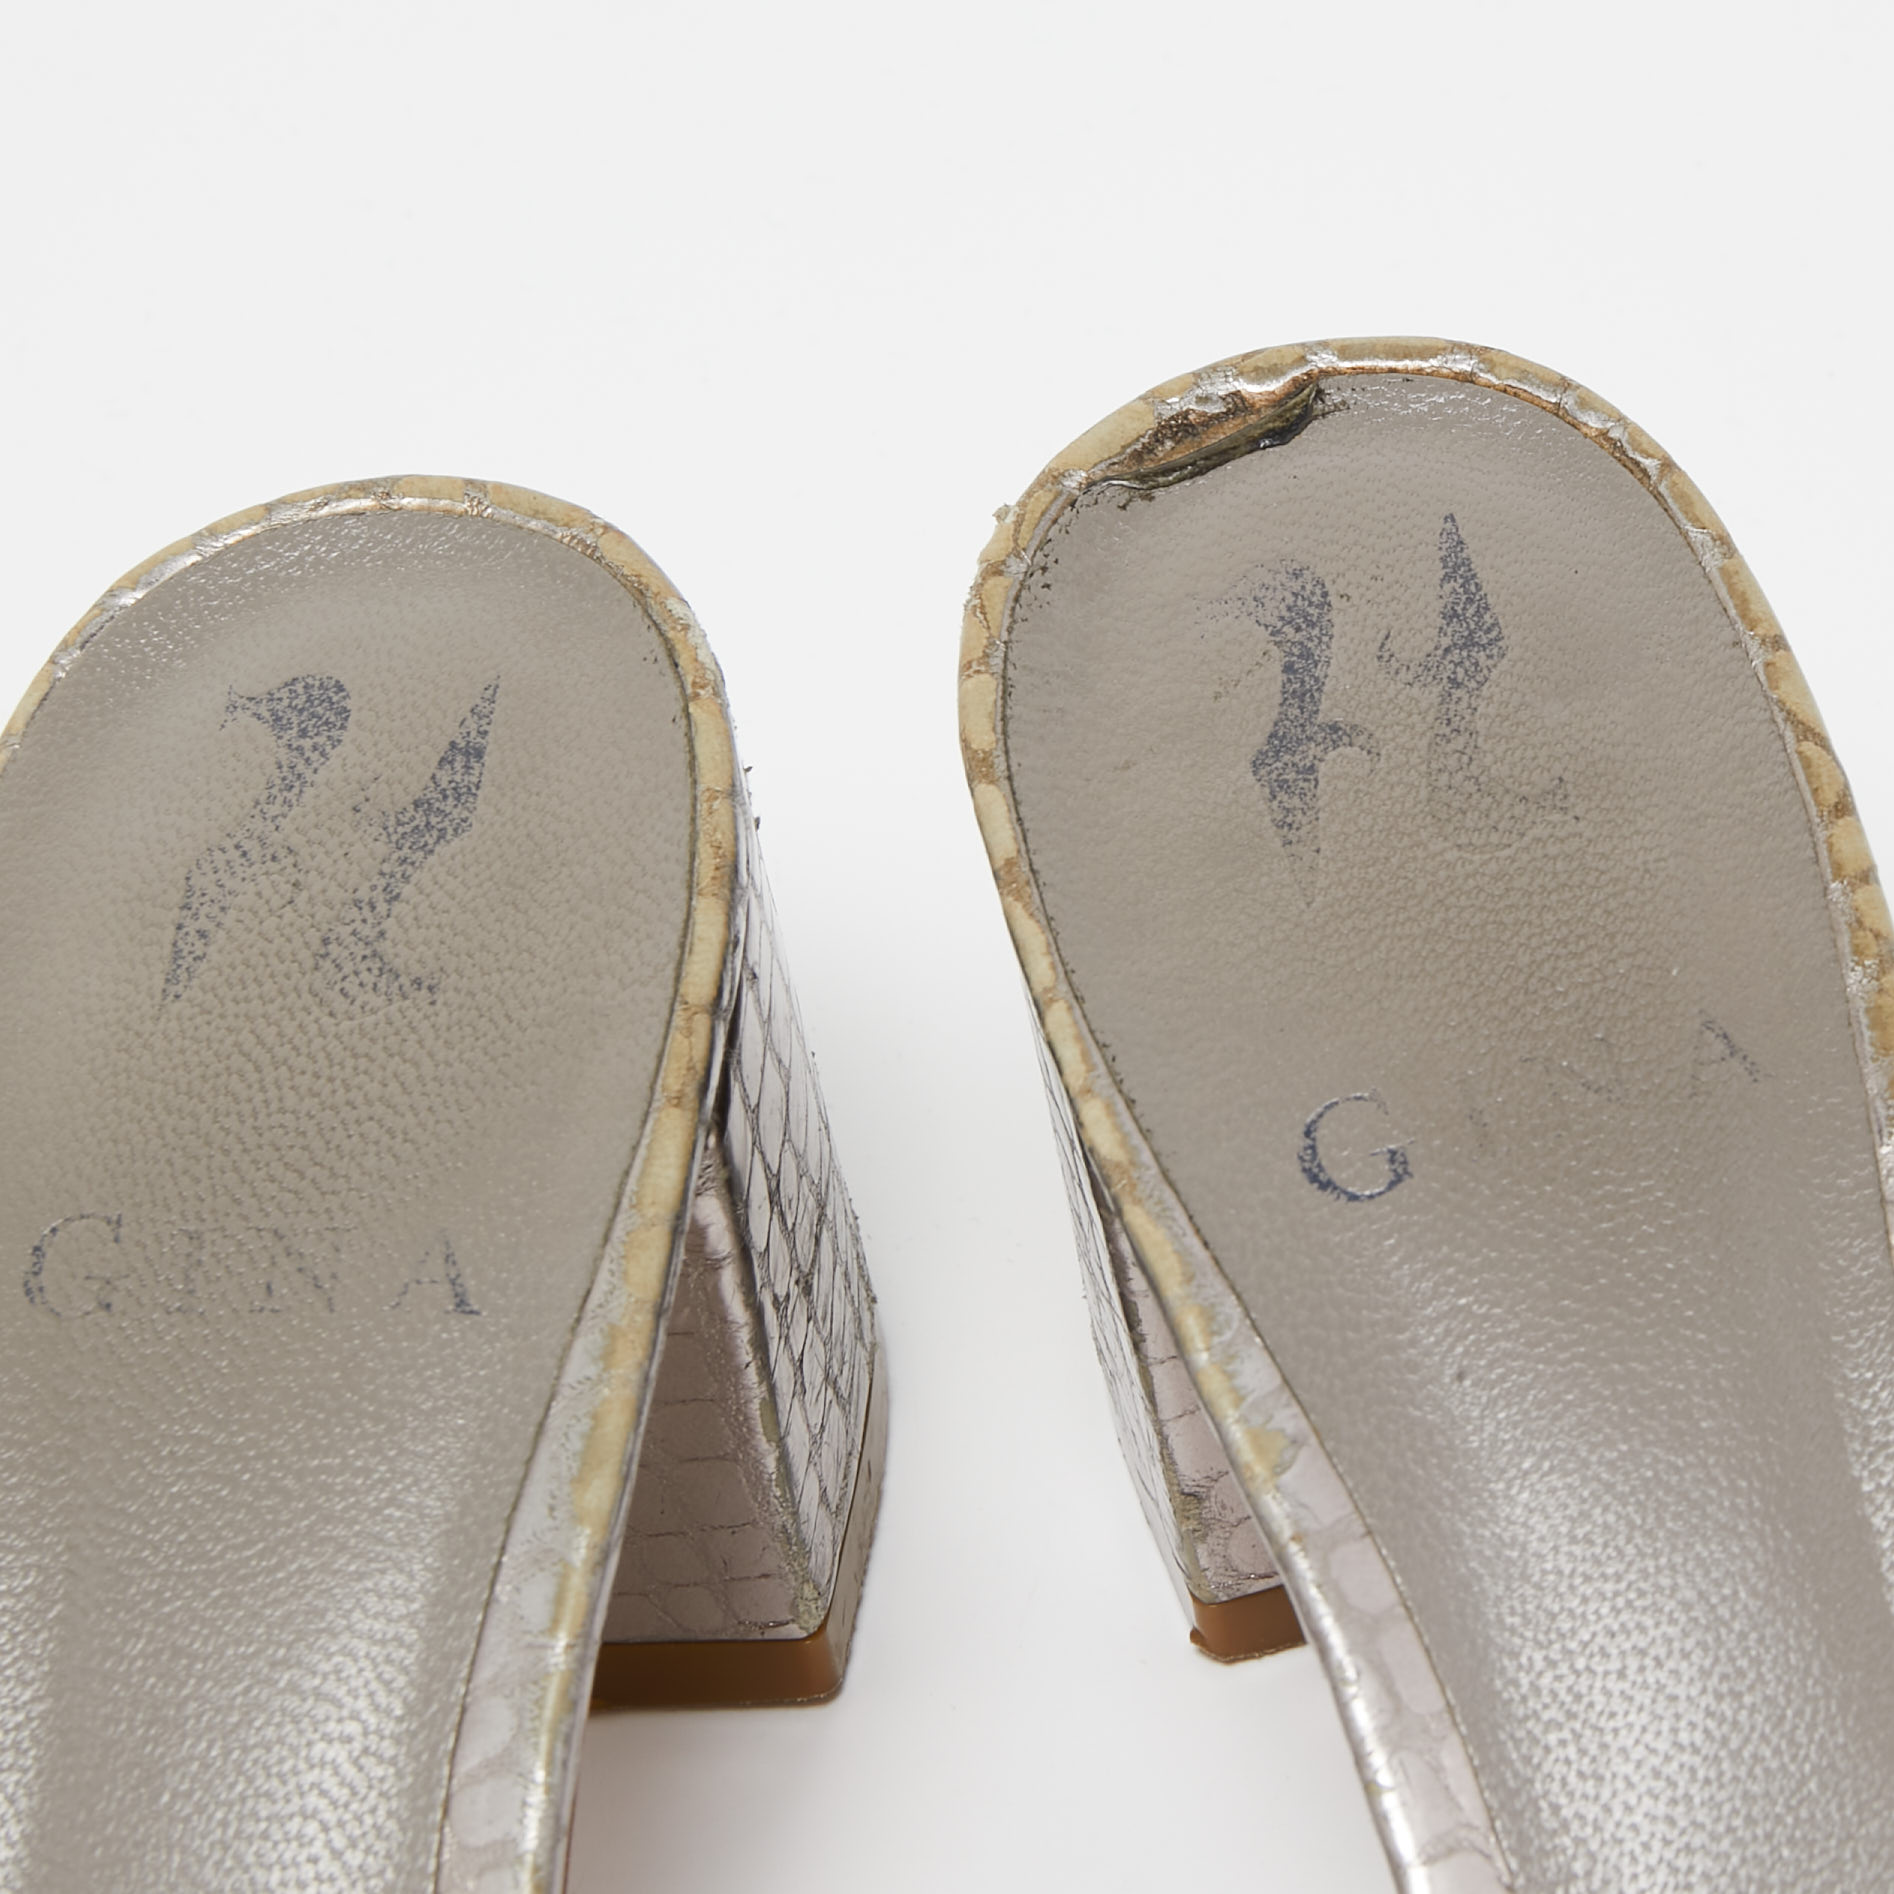 Gina Metallic Grey Crystal Embellished Leather Slide Sandals Size 37.5